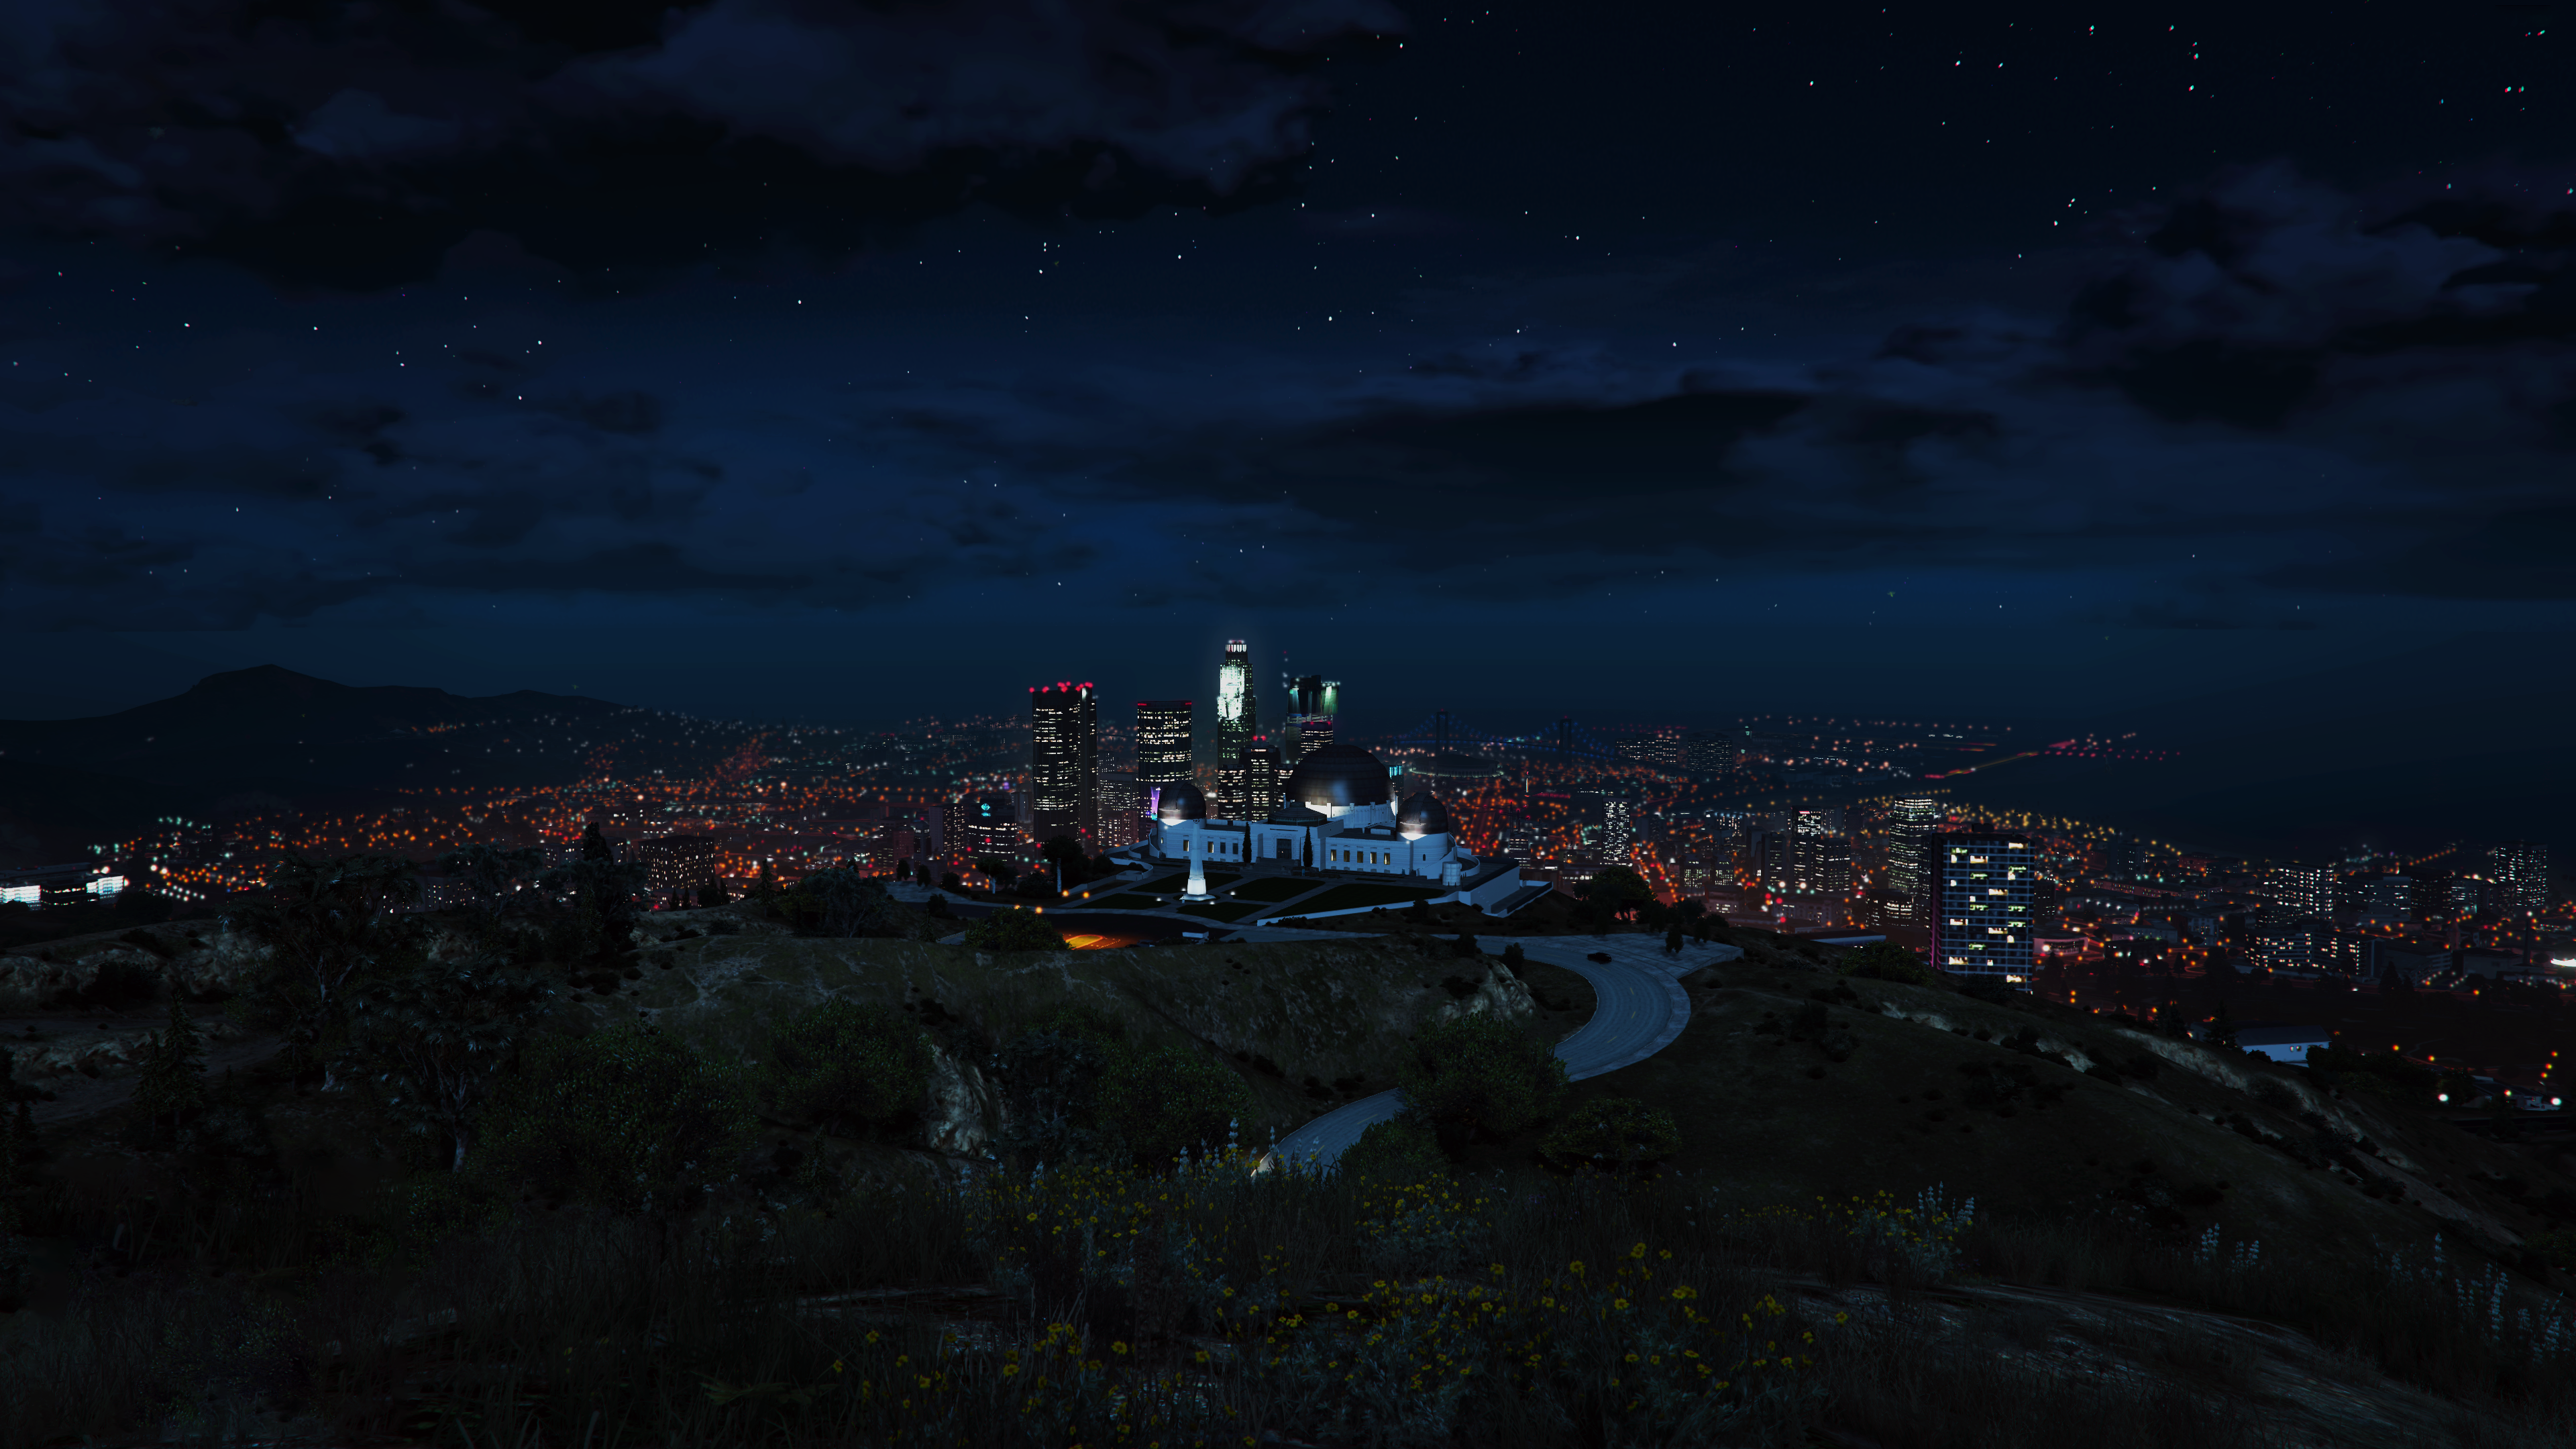 Grand Theft Auto V (GTA V) - một trò chơi đỉnh cao trong thế giới game, ngay cả khi xem qua ảnh, bạn cũng cảm nhận được sự sống động của Los Santos với độ phân giải 4K. Thành phố đầy đủ chi tiết và các khu phố chật hẹp sẽ khiến bạn mê mẩn, dù chỉ là từ những bức ảnh. Đến với ảnh này, bạn sẽ cảm nhận được thế giới của GTA V.